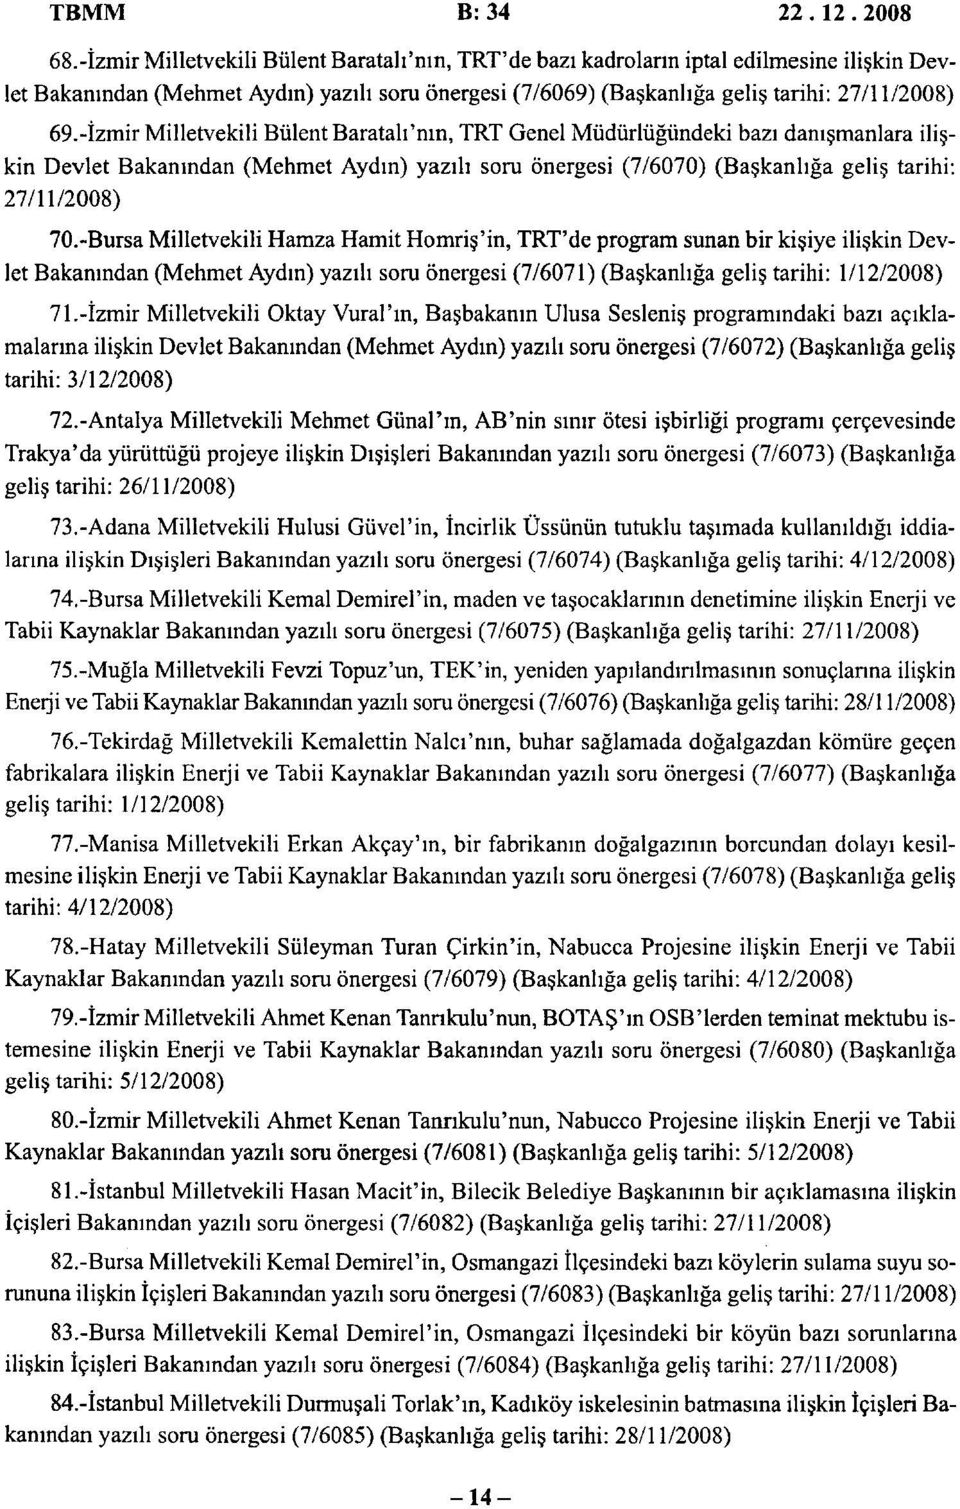 -İzmir Milletvekili Bülent Baratah'nın, TRT Genel Müdürlüğündeki bazı danışmanlara ilişkin Devlet Bakanından (Mehmet Aydın) yazılı som önergesi (7/6070) (Başkanlığa geliş tarihi: 27/11/2008) 70.